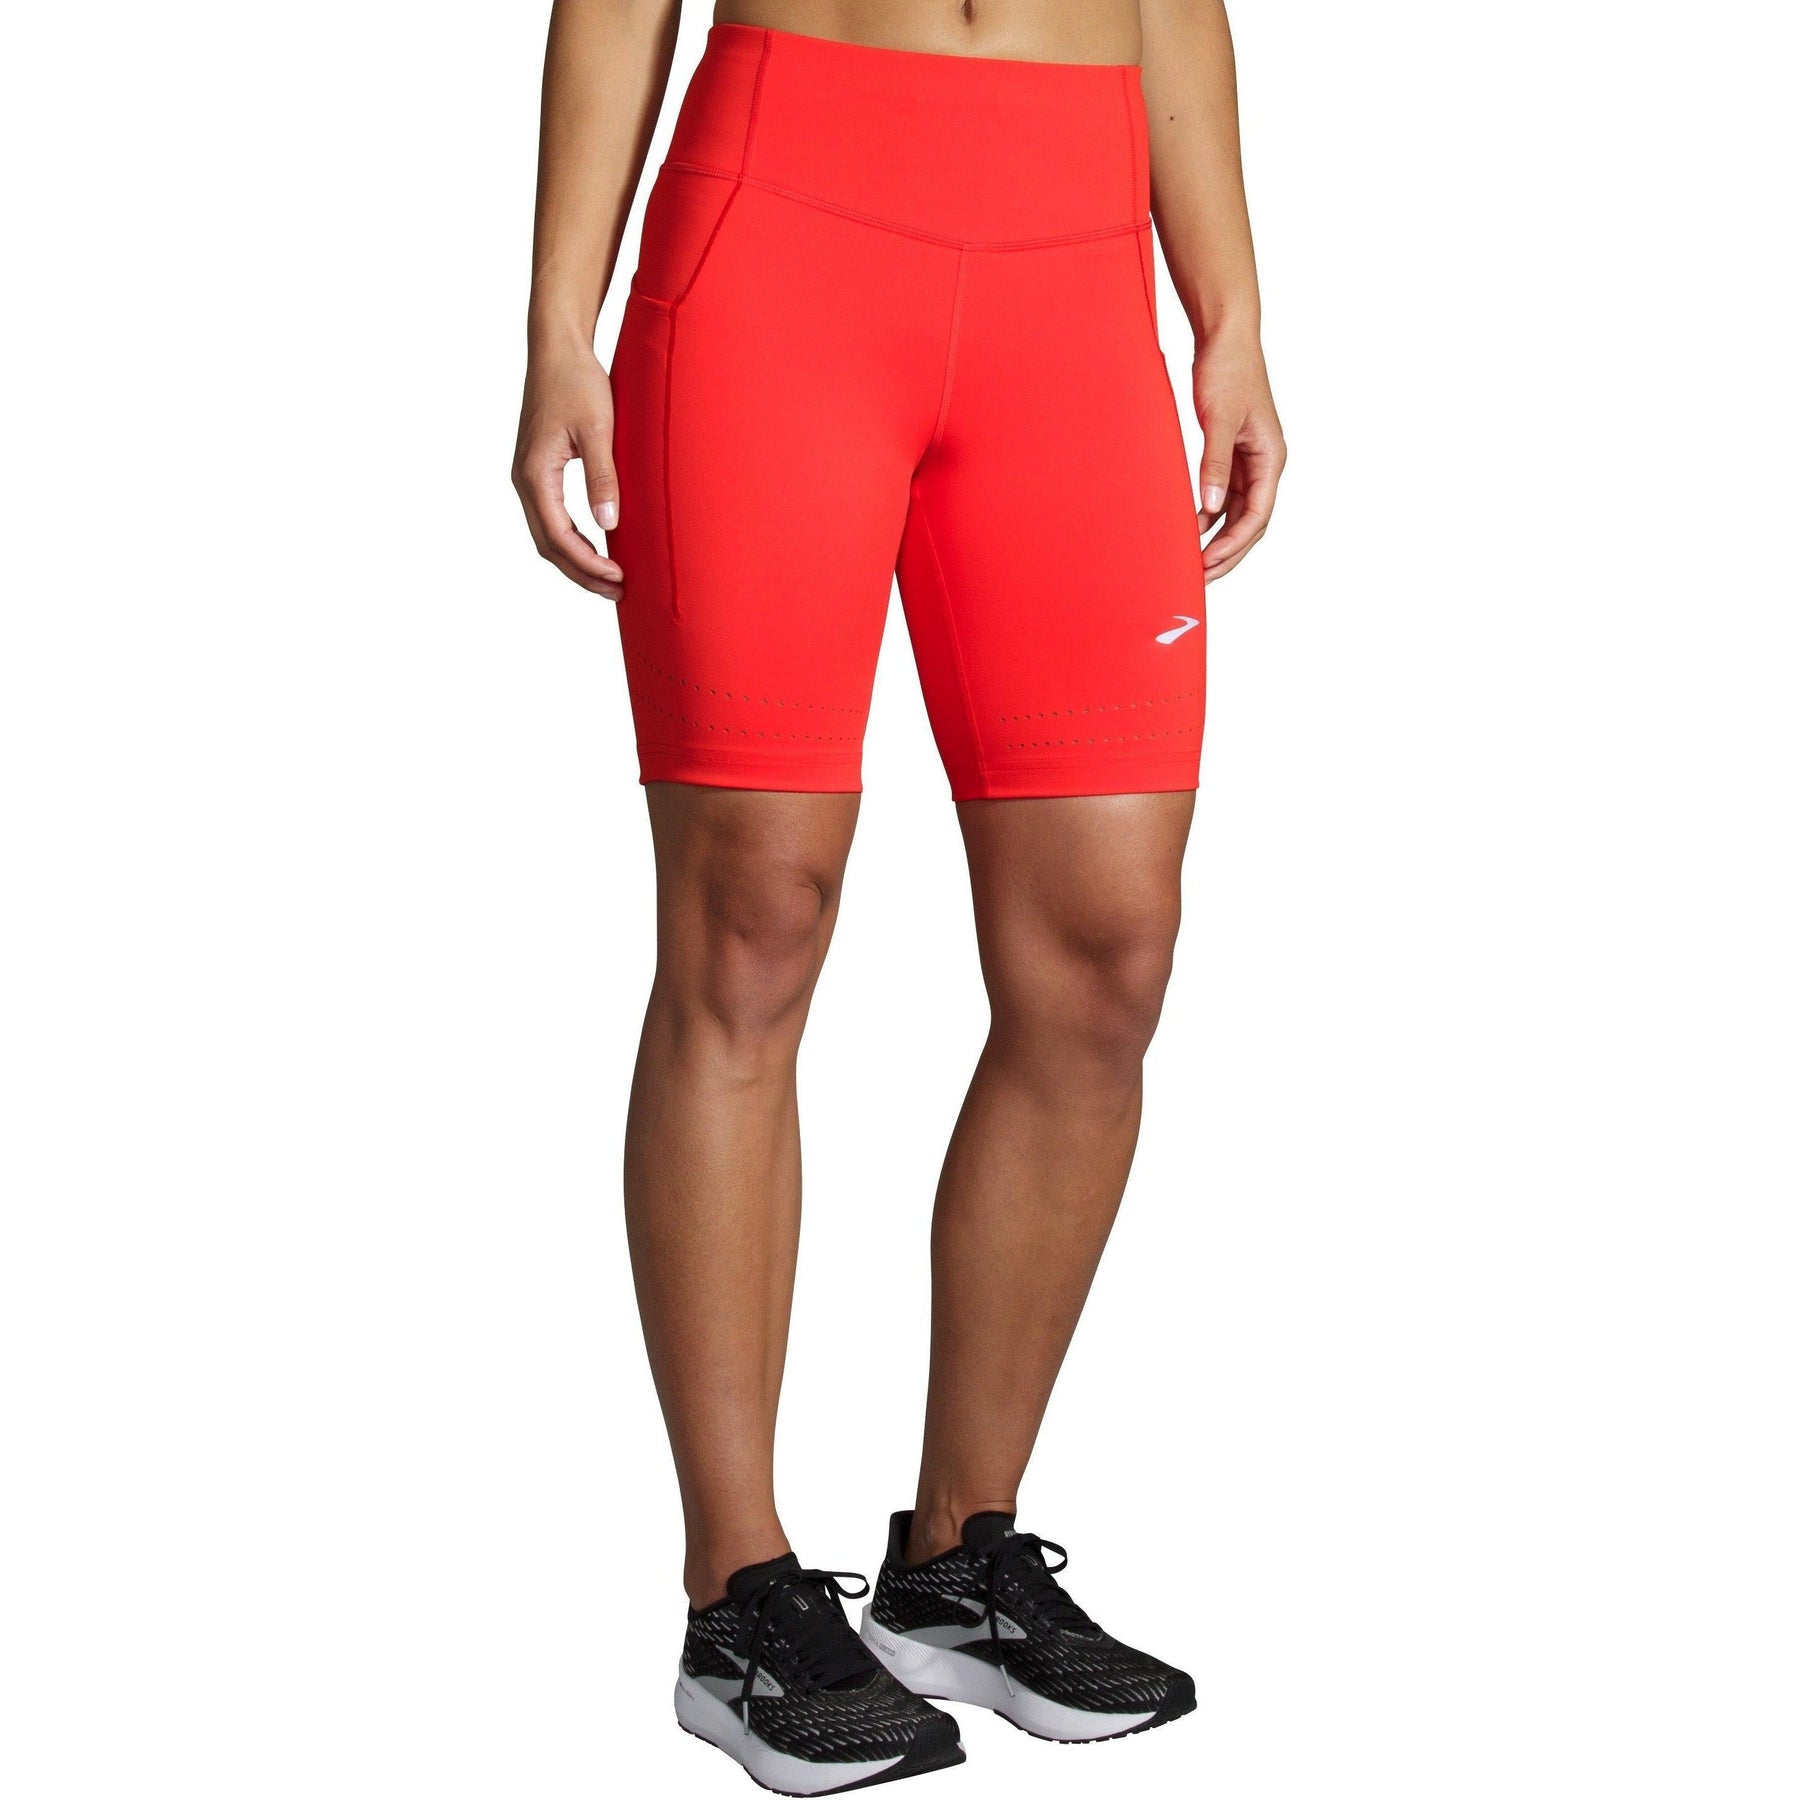 L. SHORT TIGHTS Running shorts - Women - Diadora Online Store DK